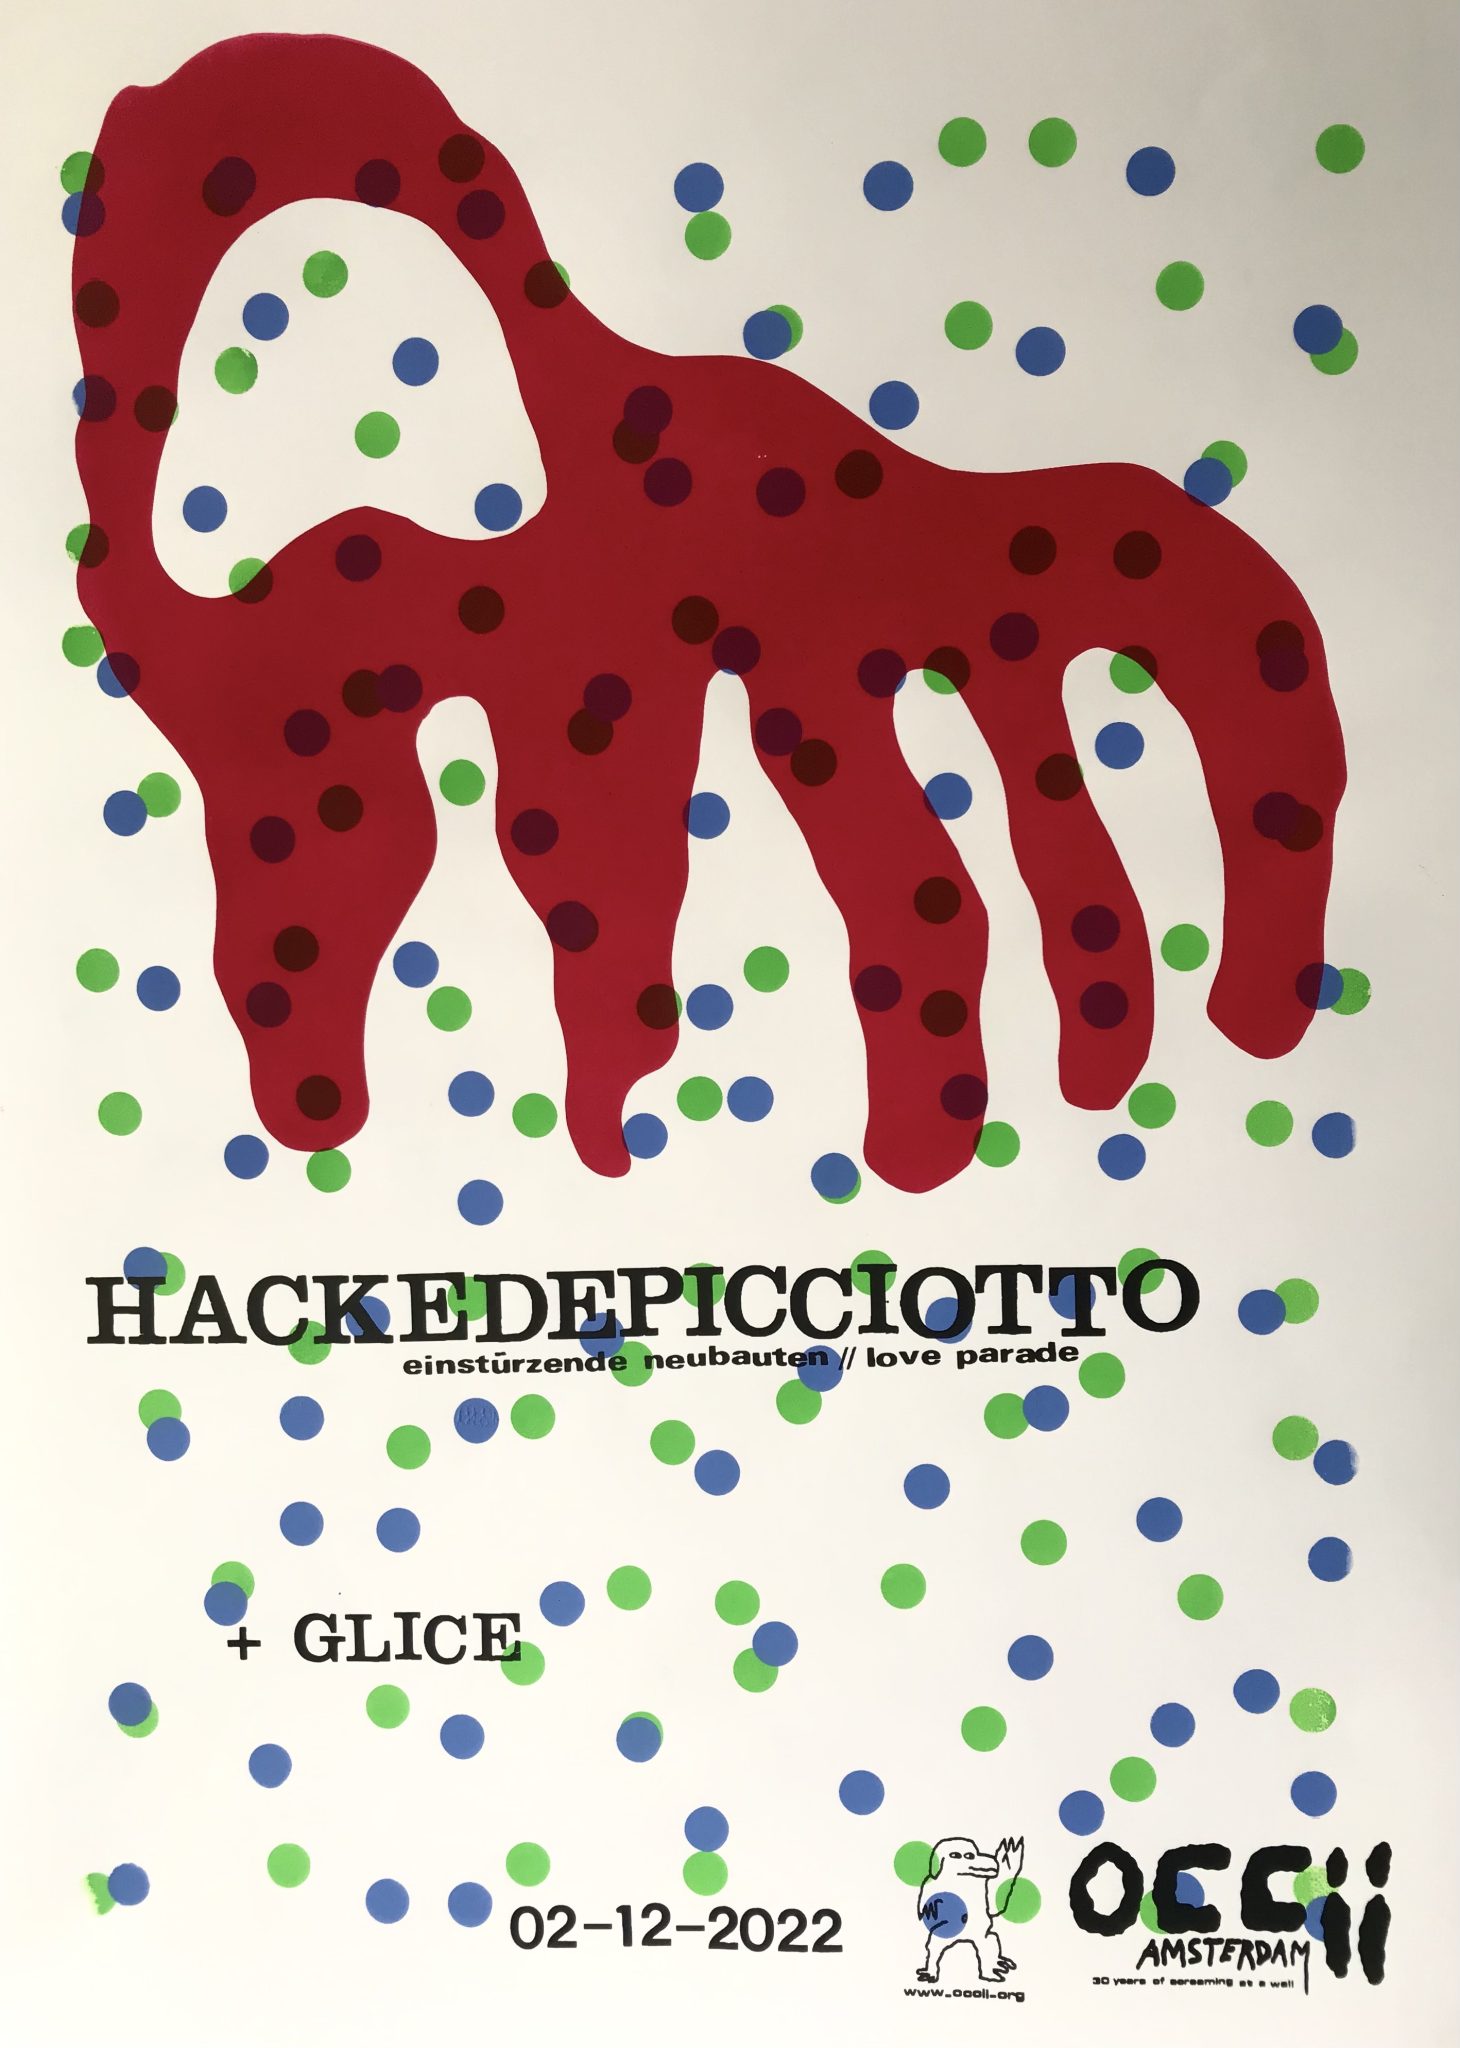 HACKEDEPICCIOTTO (DE) + GLICE + DJ BENCE (Archaic Inventions)))